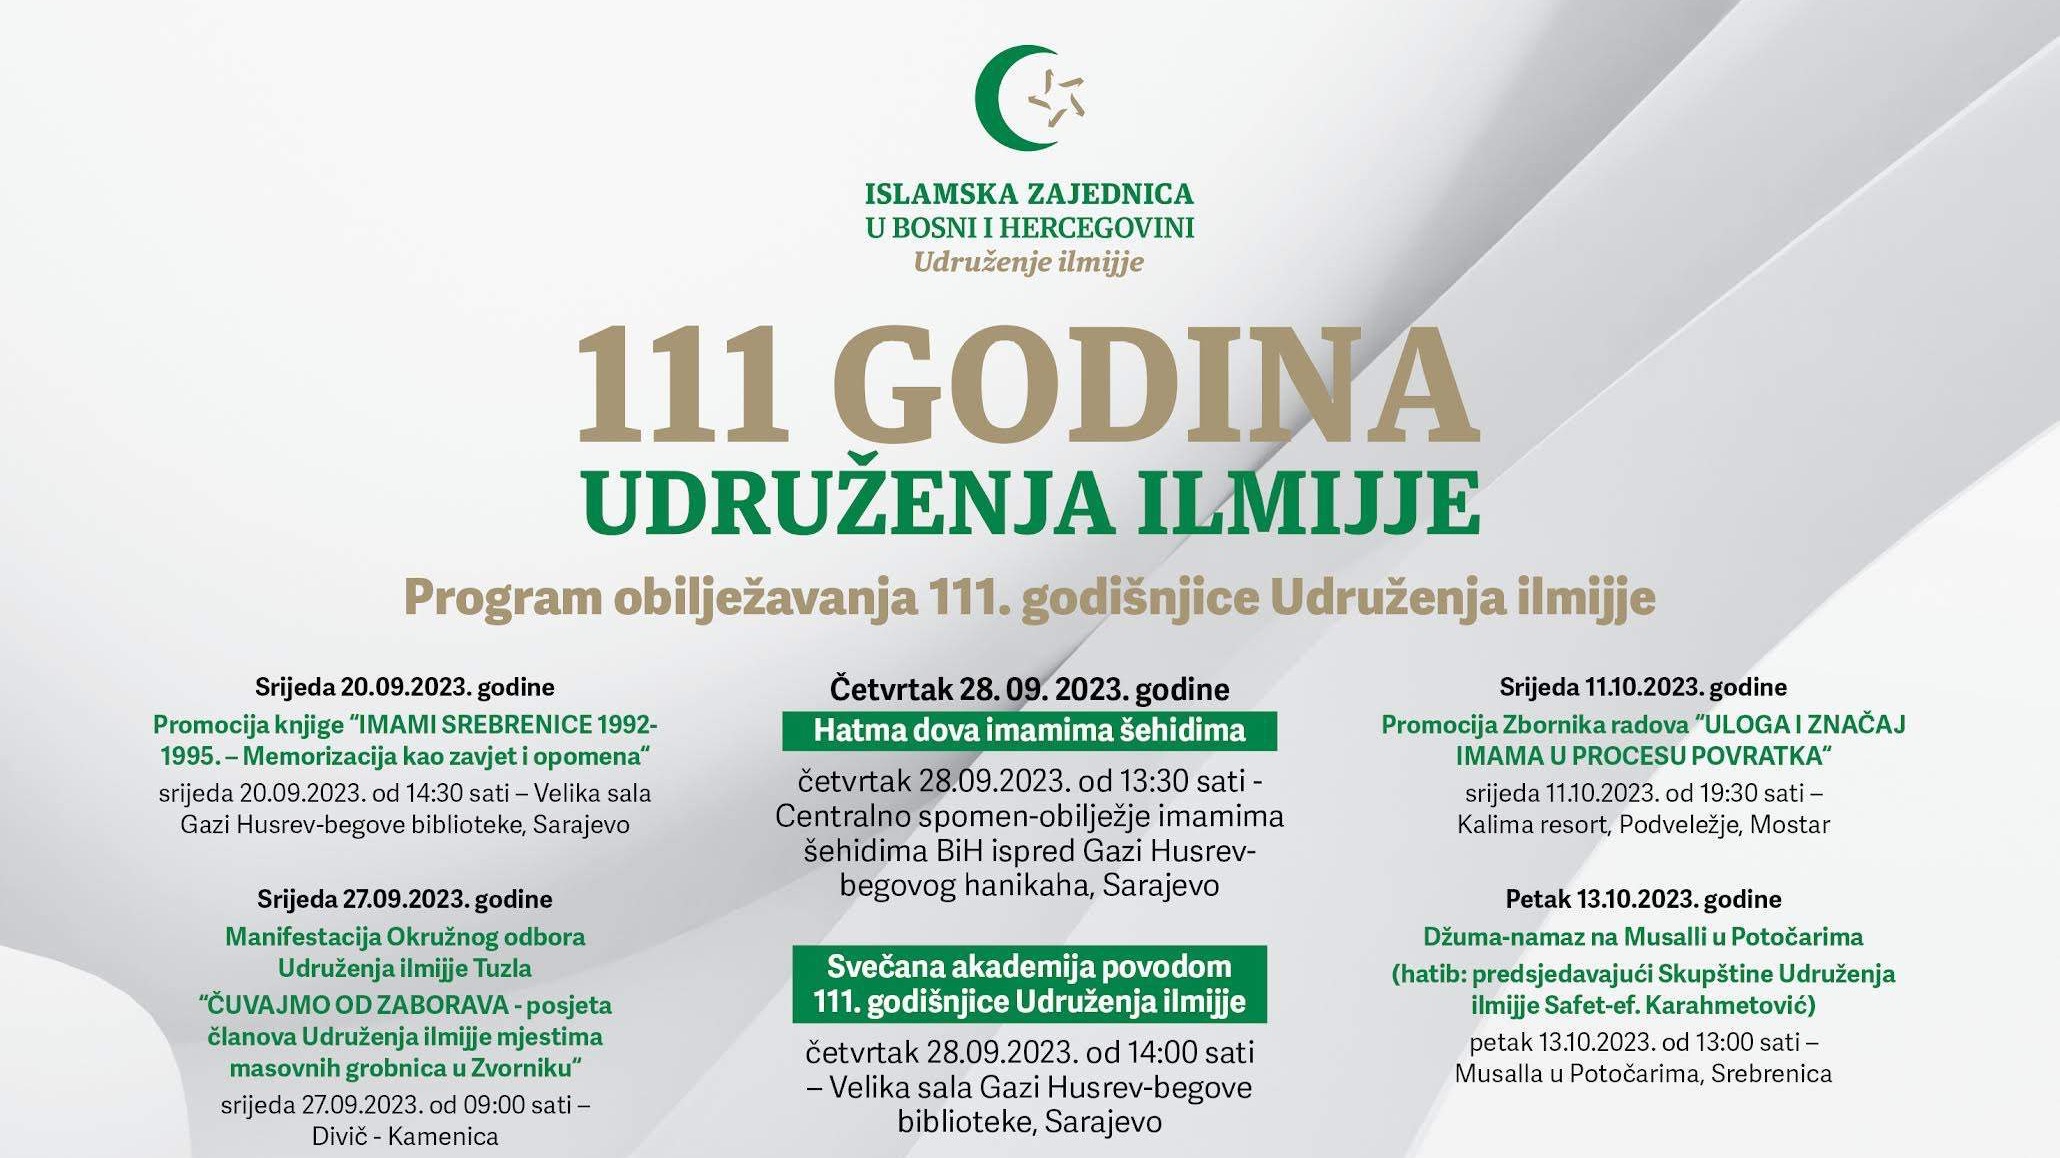 Svečana akademija povodom 111. godišnjice Udruženja ilmijje 28. septembra